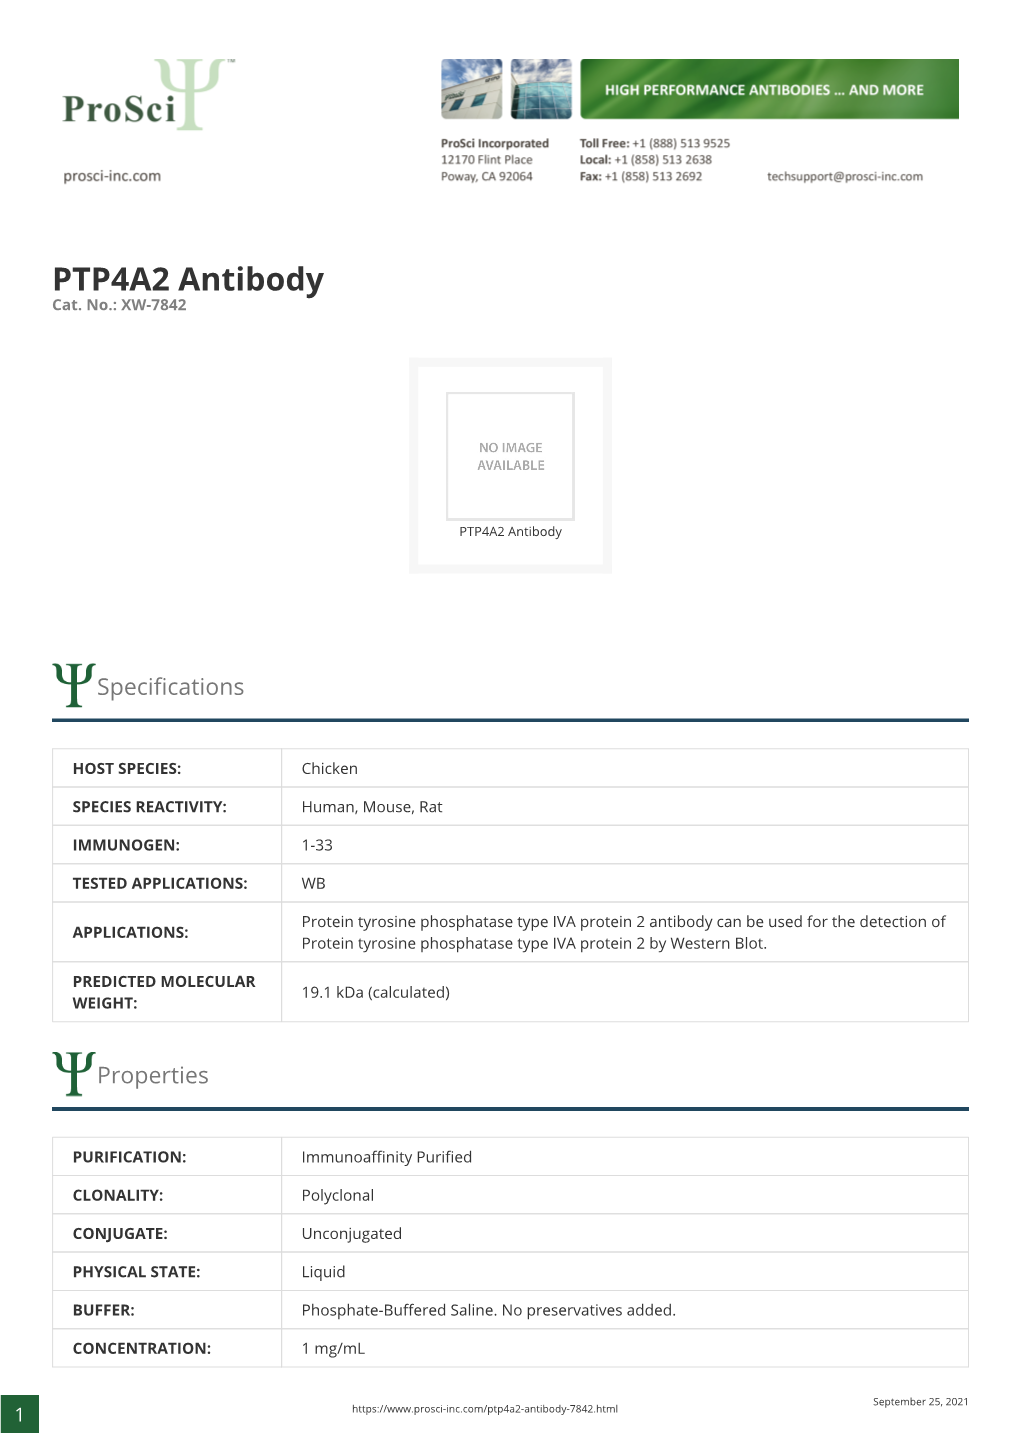 PTP4A2 Antibody Cat